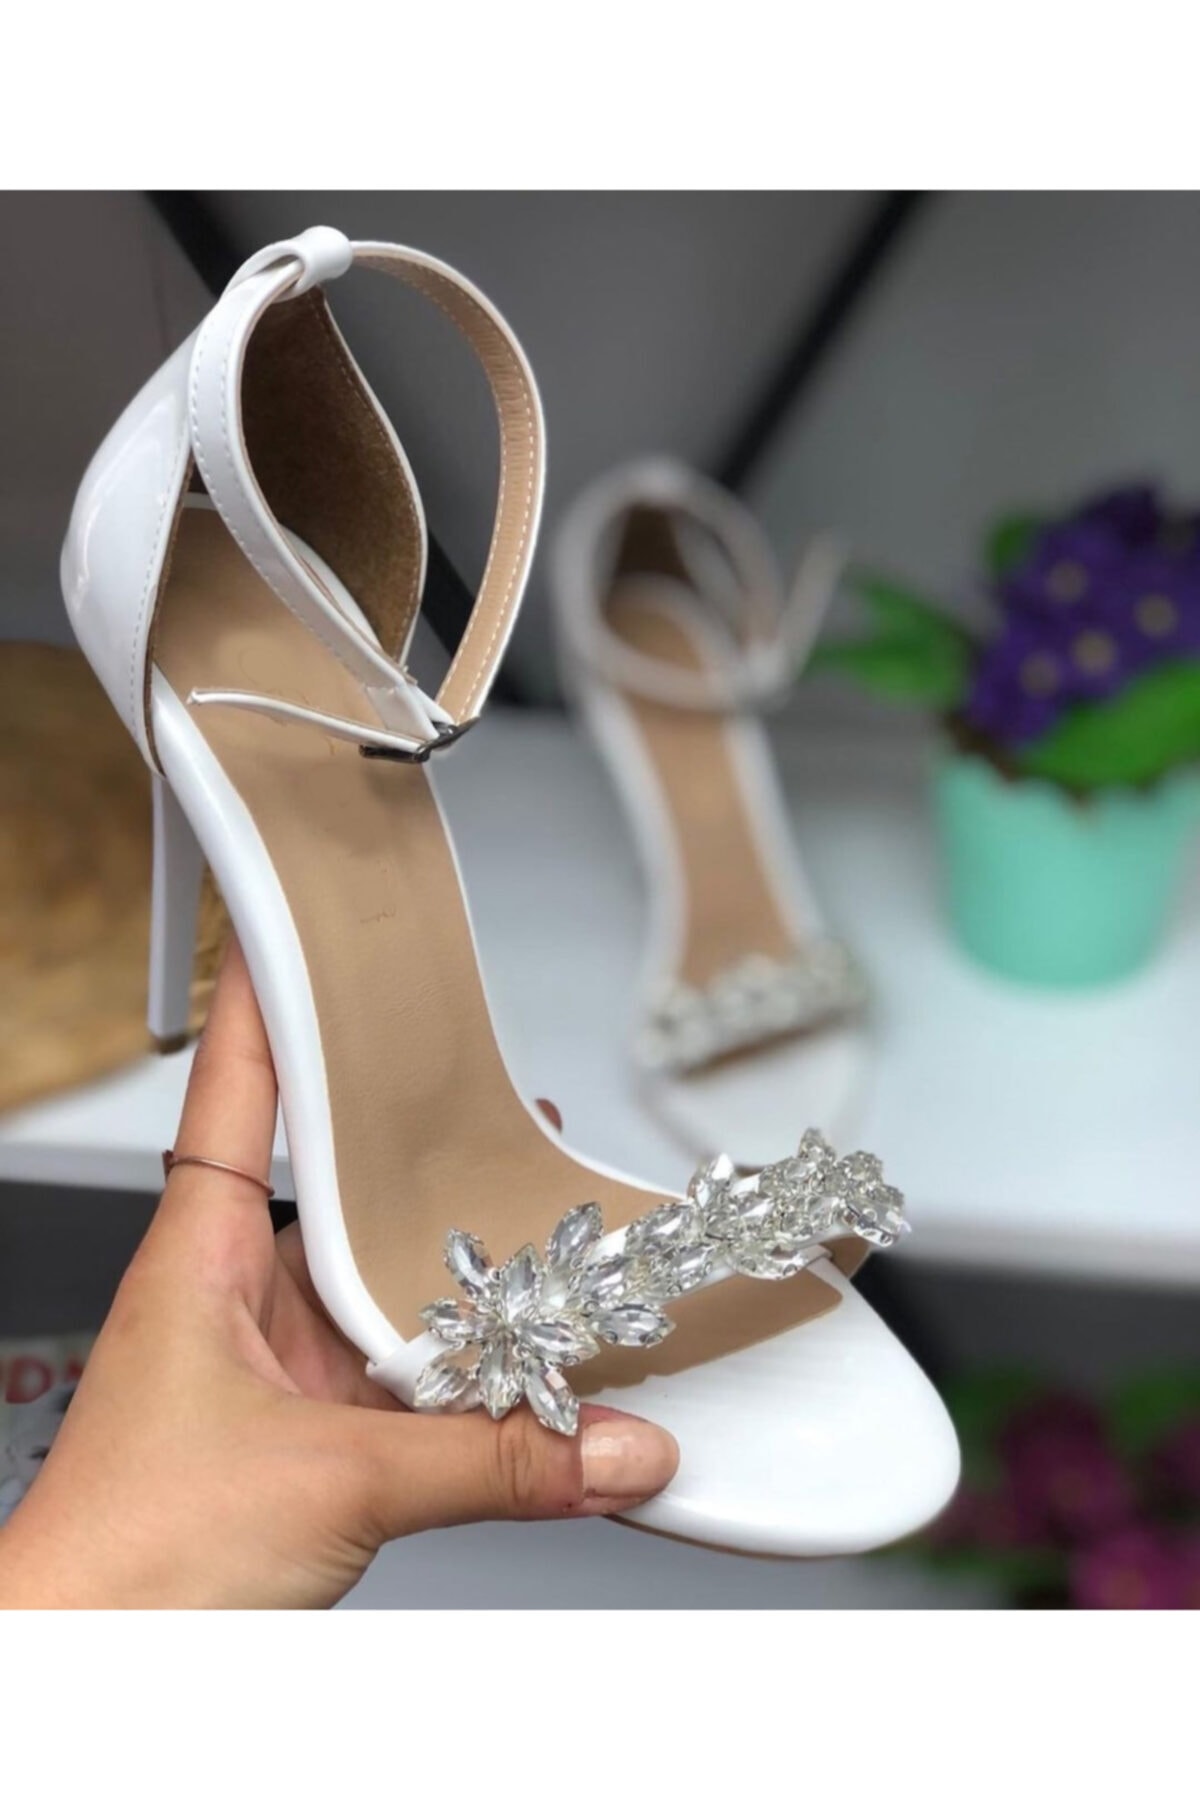 Afilli Beyaz Taşlı Tek Bant Ince Yüksek Topuklu Abiye Ayakkabı Önü Açık Şık Bilekten Sandalet